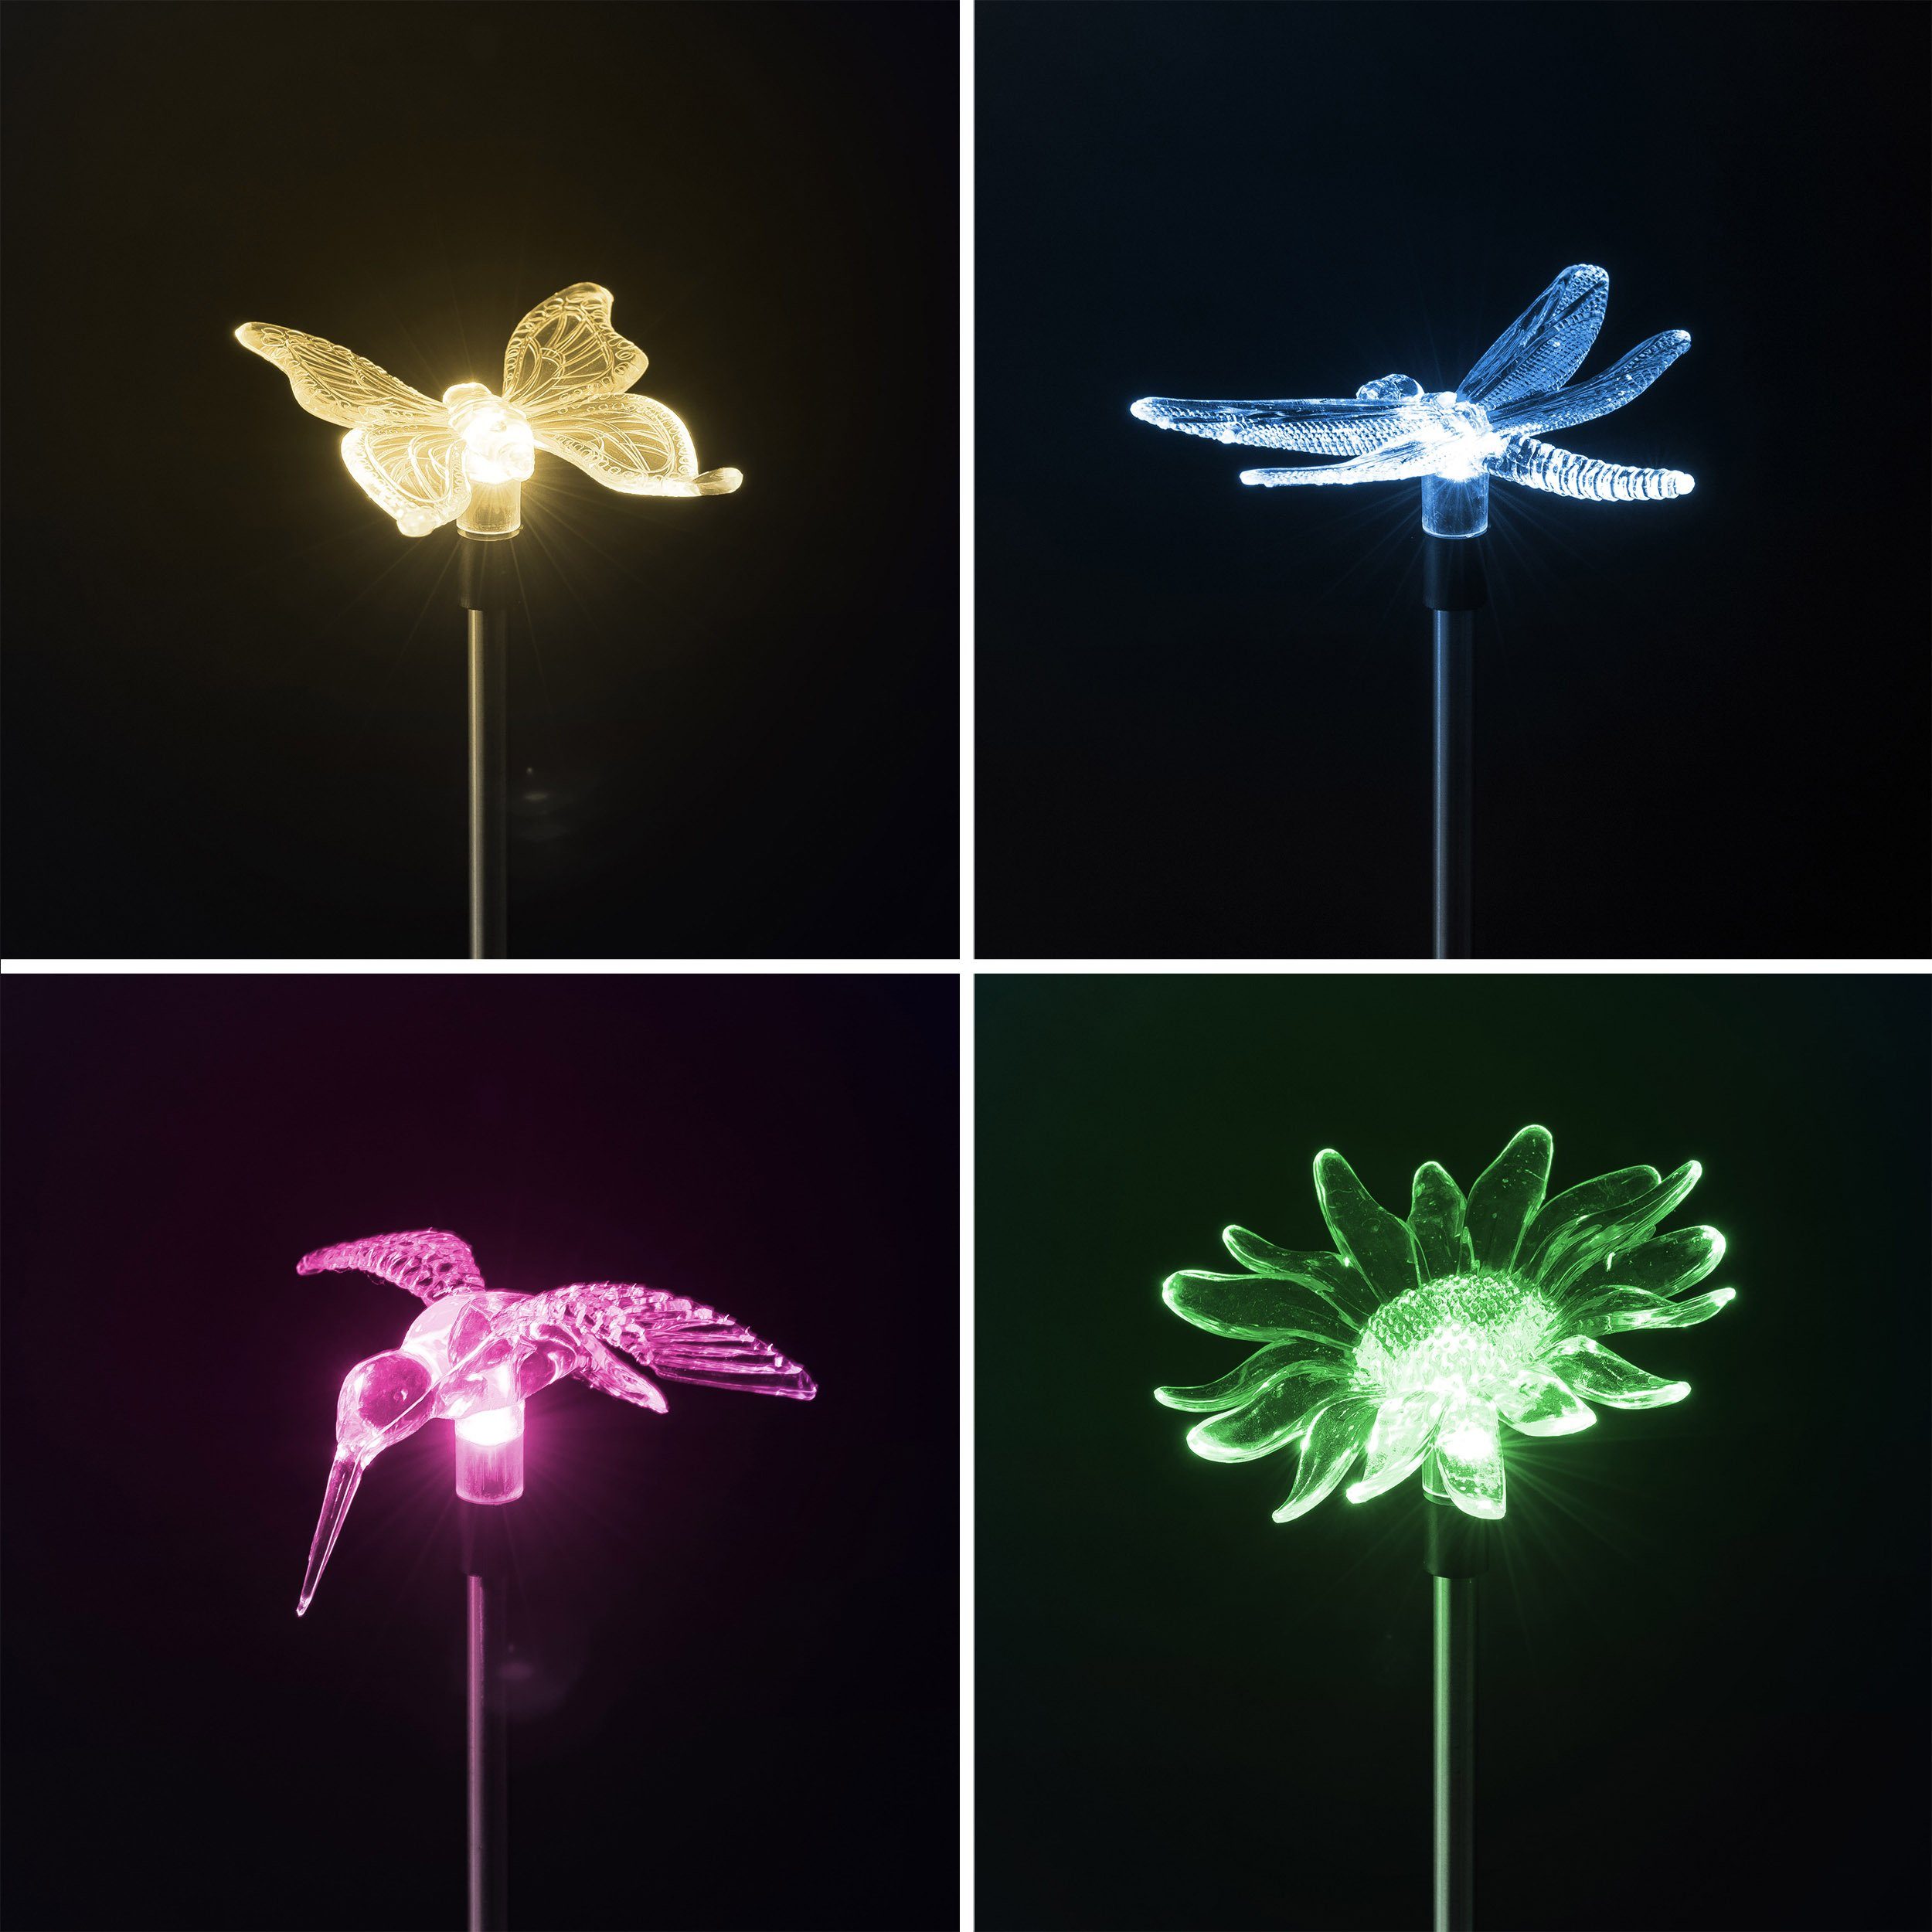 BONETTI LED Schmetterling, Set Motive: 4er Solarlampen, Solar Libelle, moderne Gartenstecker, Einschaltautomatik Solarleuchte Blume, Kolibri, automatischer 4 Farbwechsel